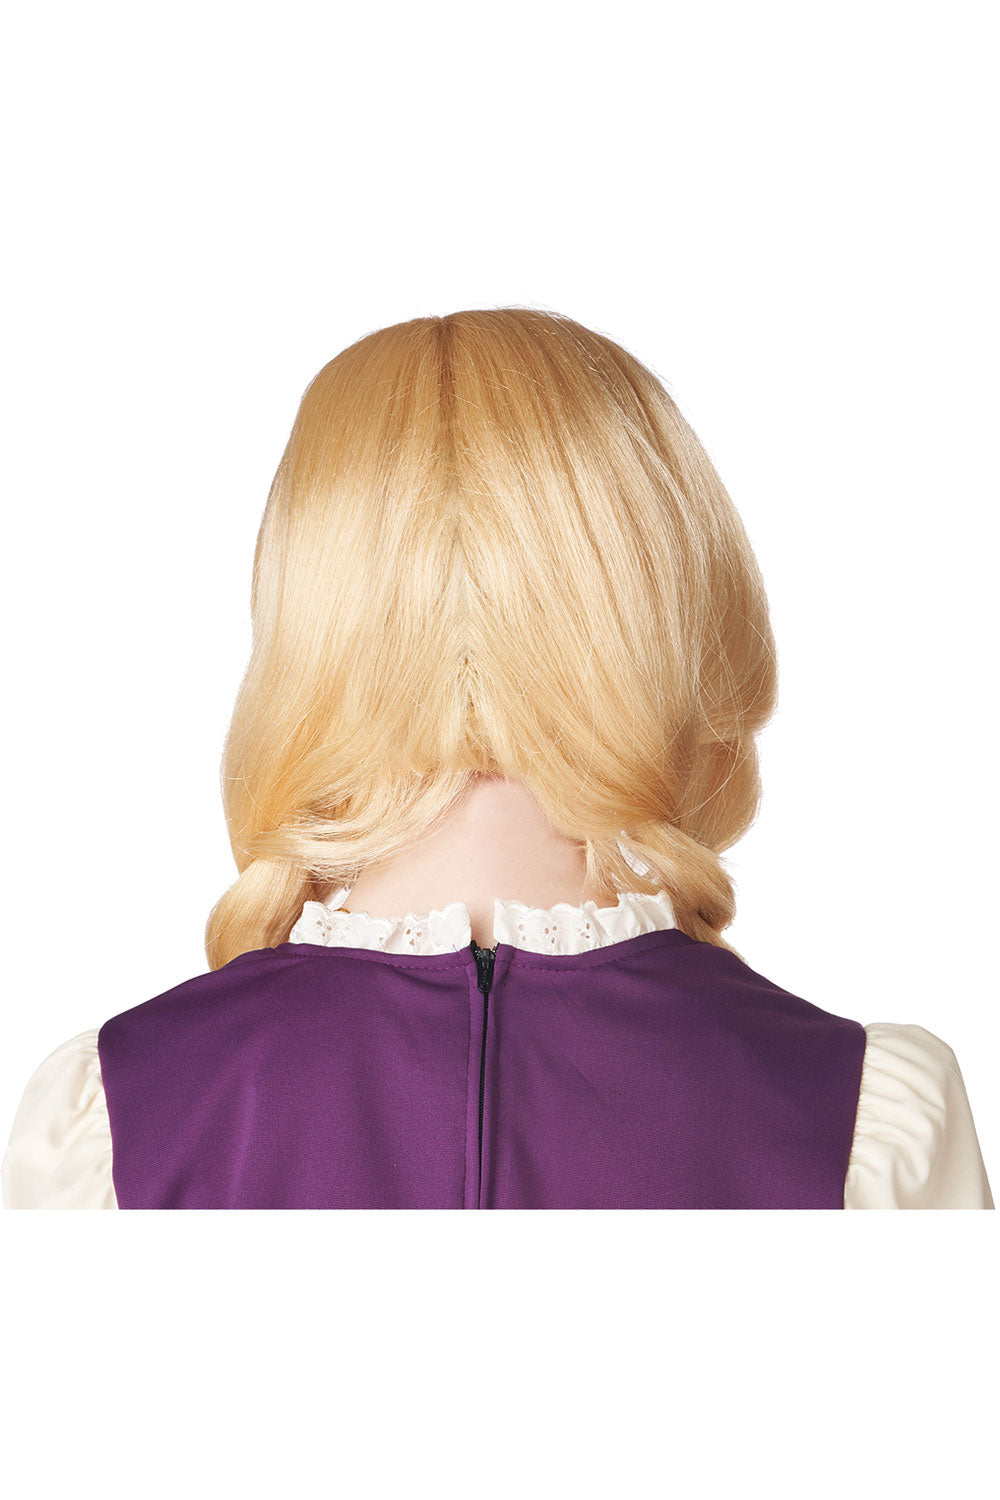 Soft Blonde Braids Wig California Costume 7021-207